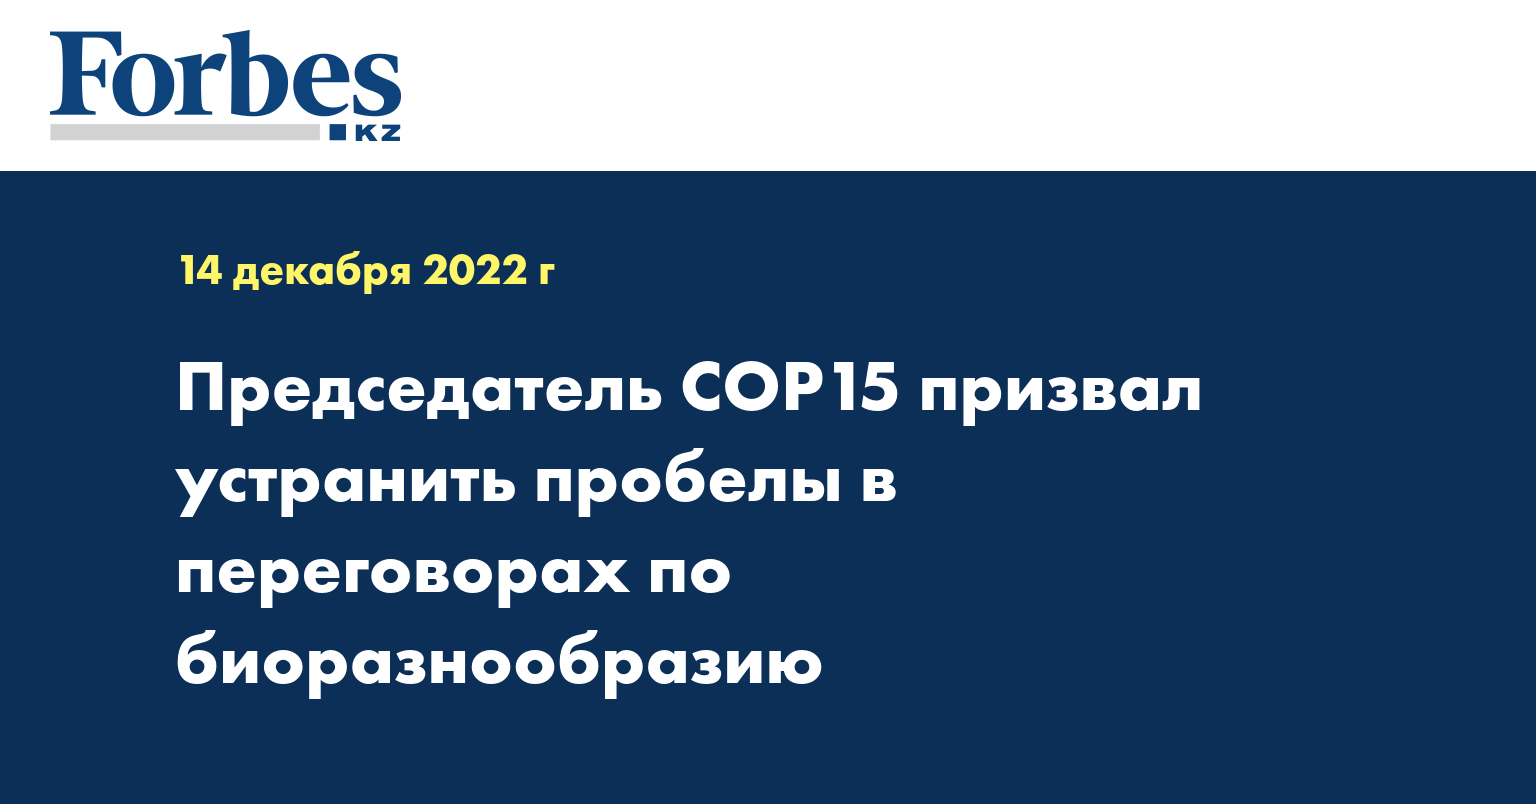 Председатель COP15 призвал устранить пробелы в переговорах по биоразнообразию